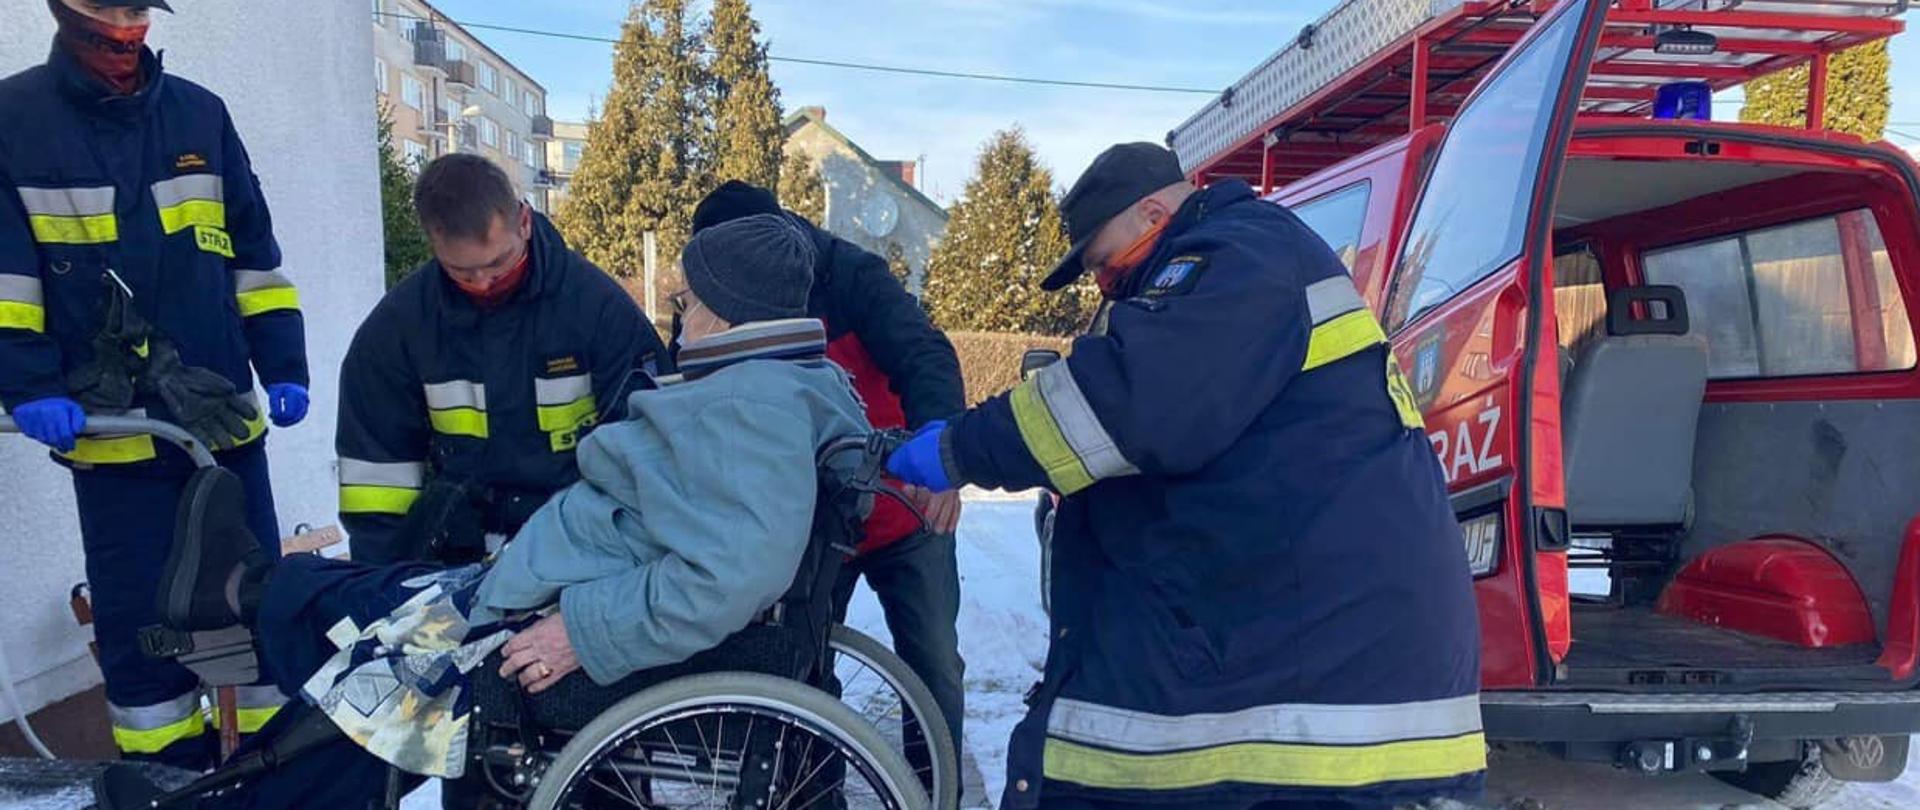 Na zdjęciu znajduje się osoba będąca na wózku inwalidzkim którą strażacy dostarczyli do punktu szczepień na pandemię COVID-19.